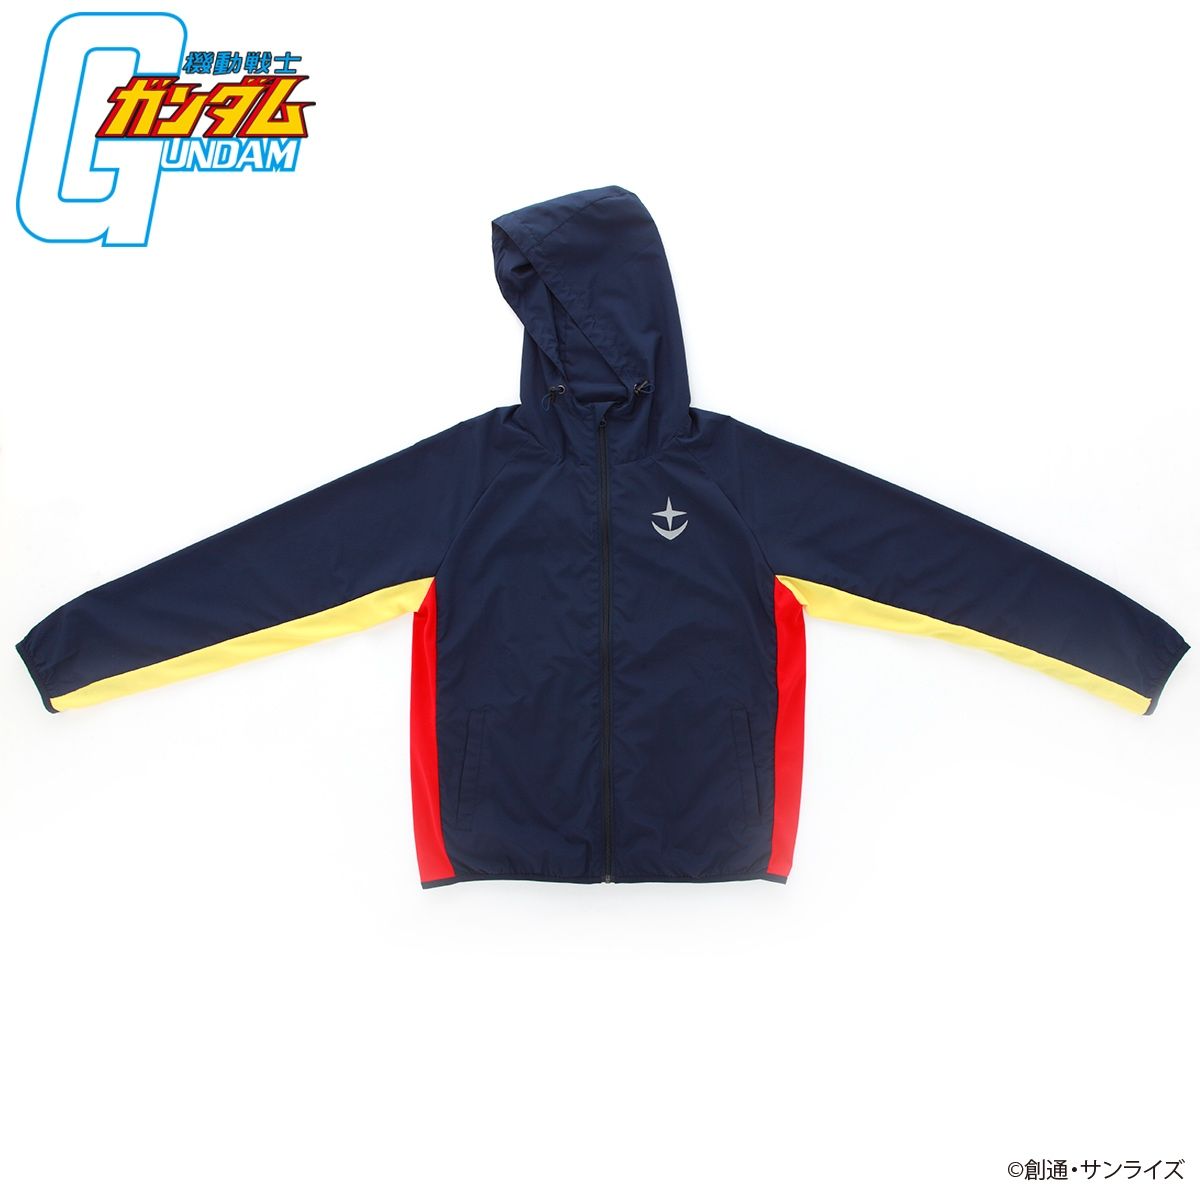 Mobile Suit Gundam Sportswear - Sweatsuit